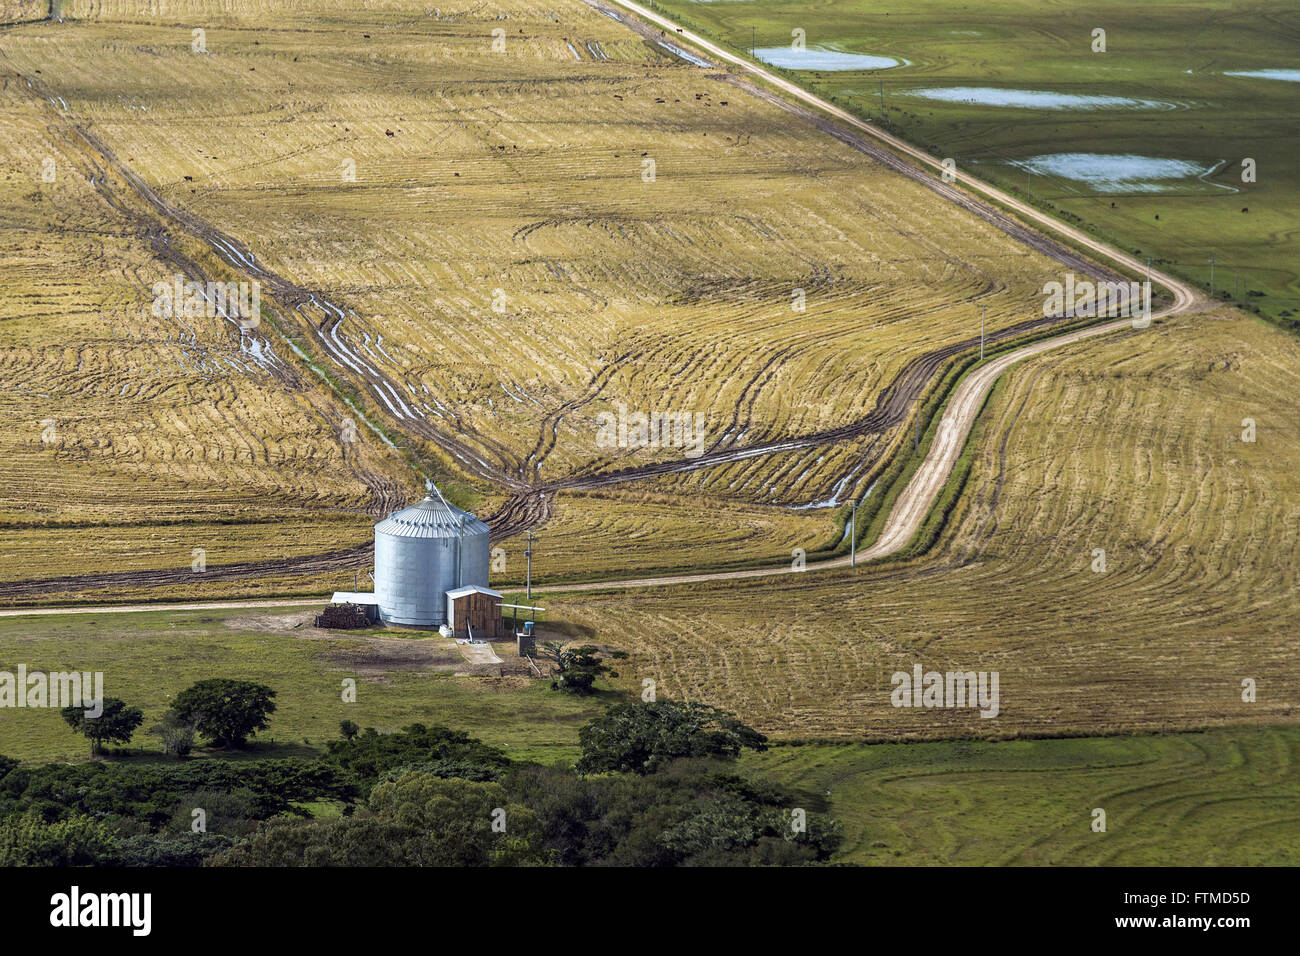 Vista Aerea de Silo e Plantacao de arroz Stockfoto